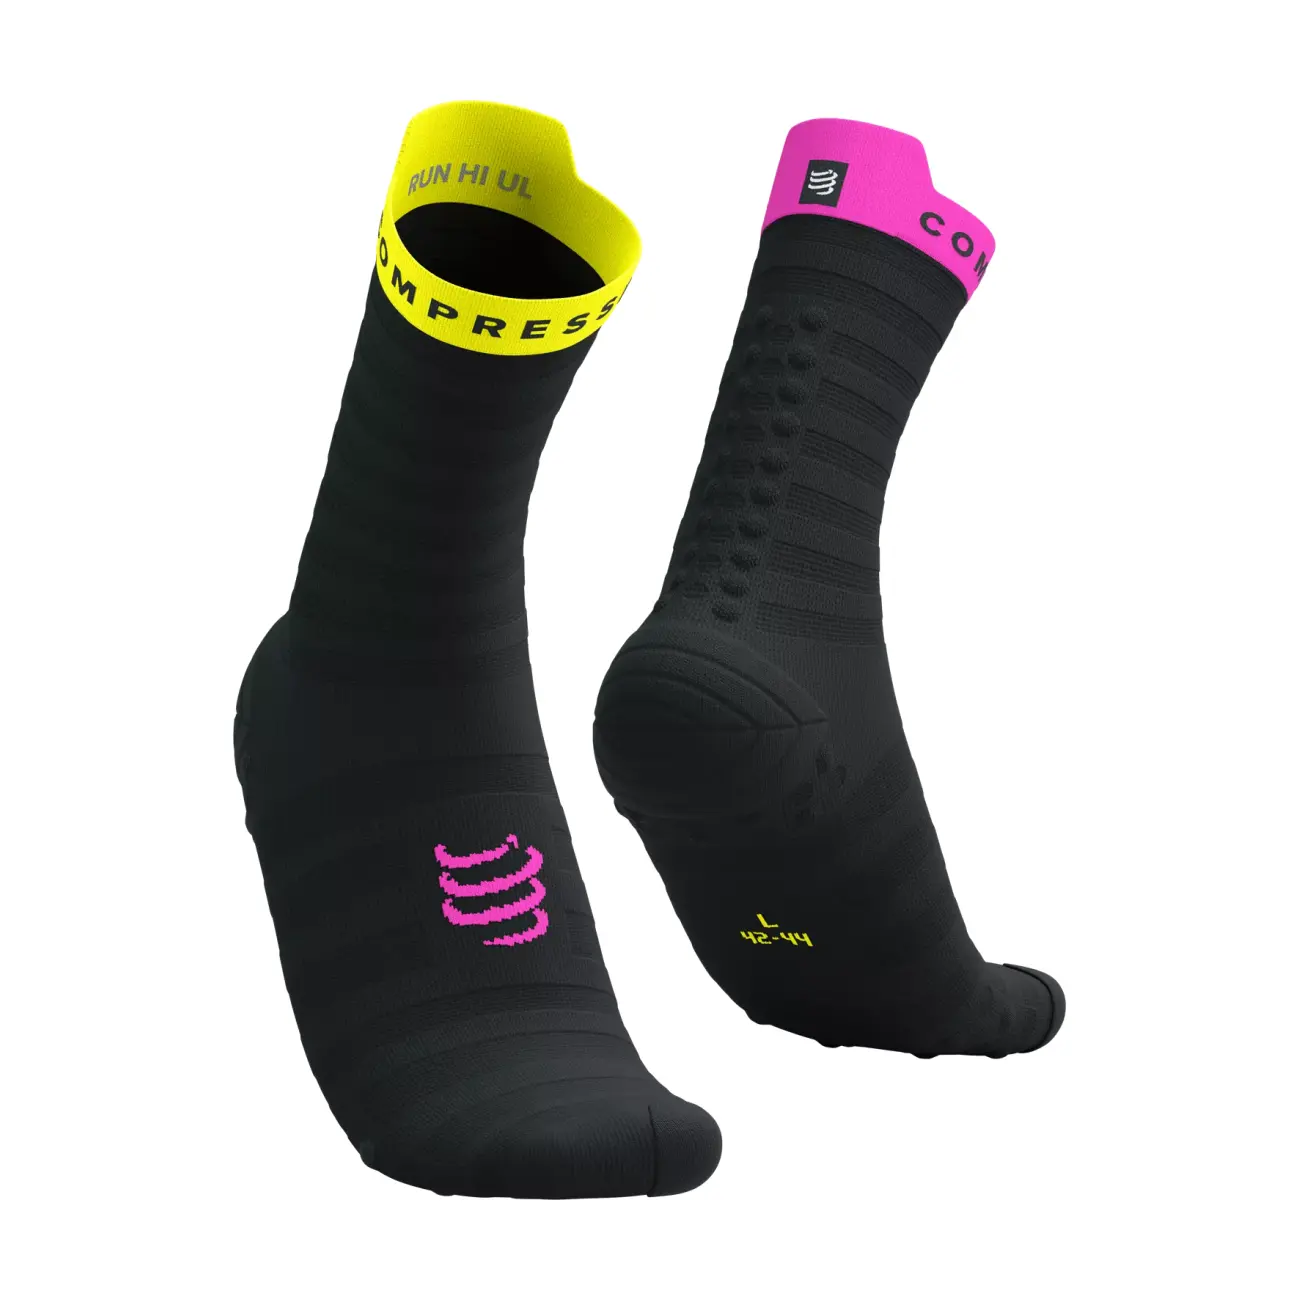 COMPRESSPORT Cyklistické ponožky klasické - PRO RACING V4.0 ULTRALIGHT RUN - čierna/žltá/ružová 39-41